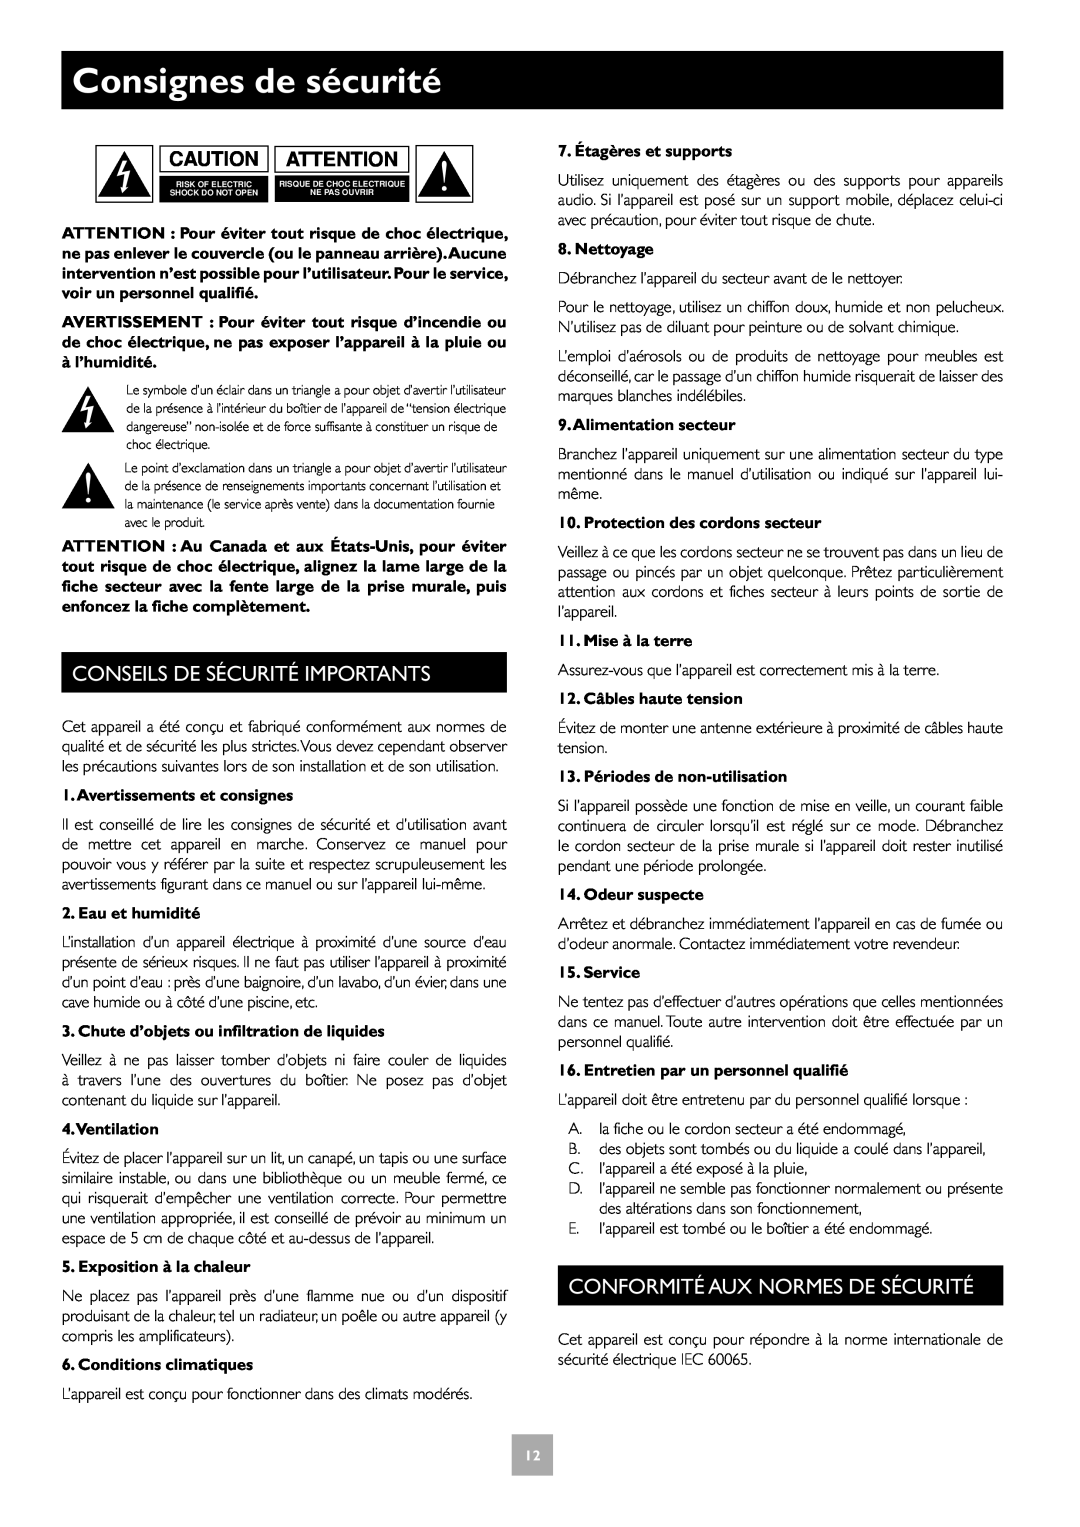 Arcam T31 manual Consignes de sécurité, Conseils De Sécurité Importants, Conformité Aux Normes De Sécurité 